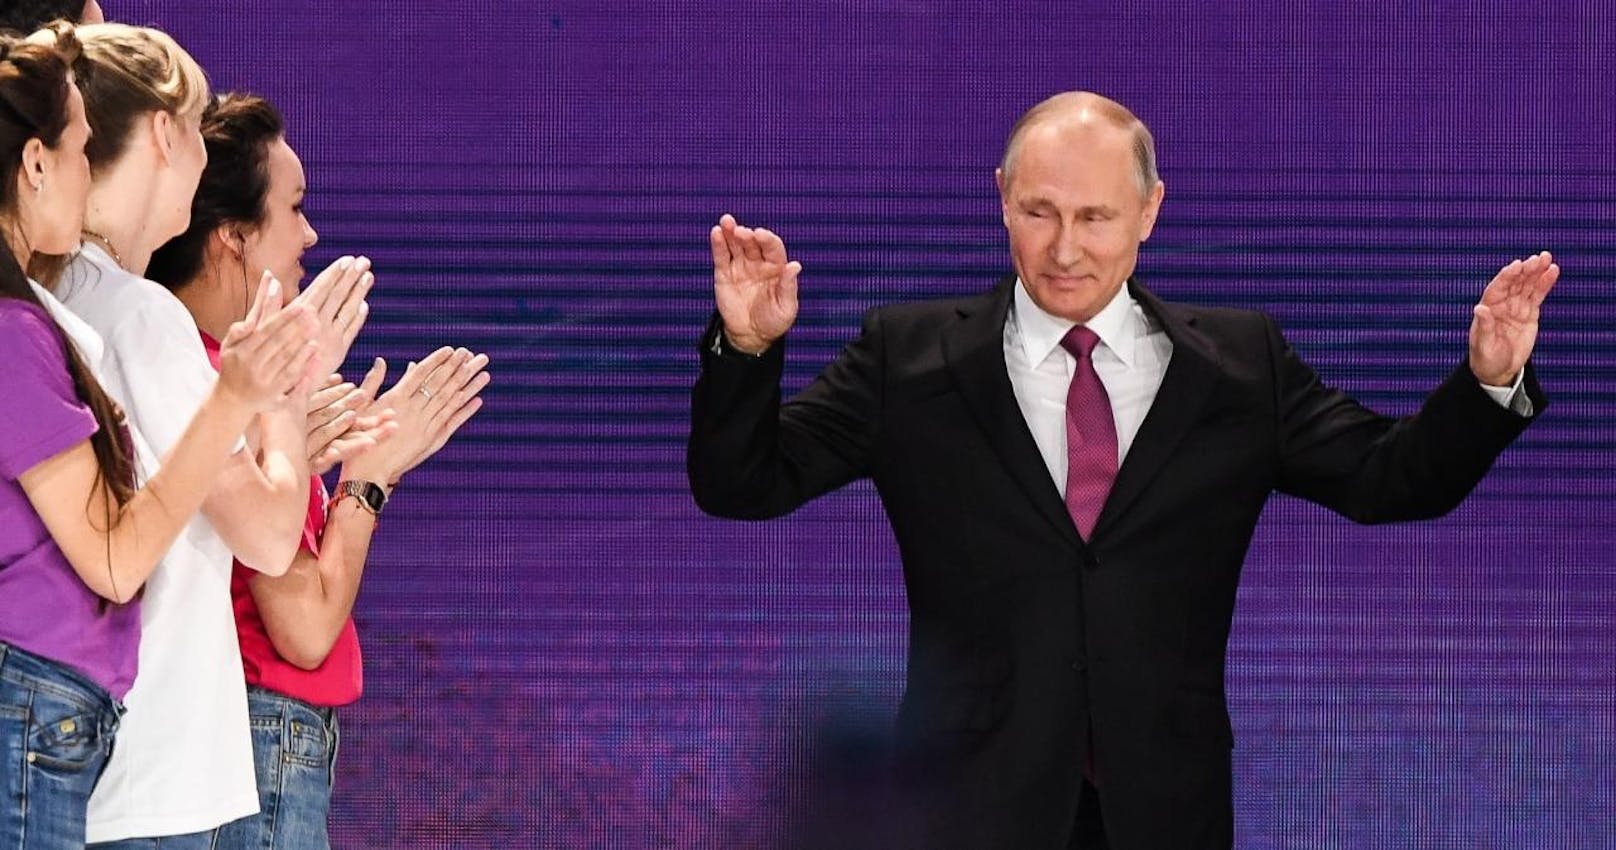 Russlands Staatschef Wladimir Putin will bei der Präsidentschaftswahl im März 2018 erneut antreten.